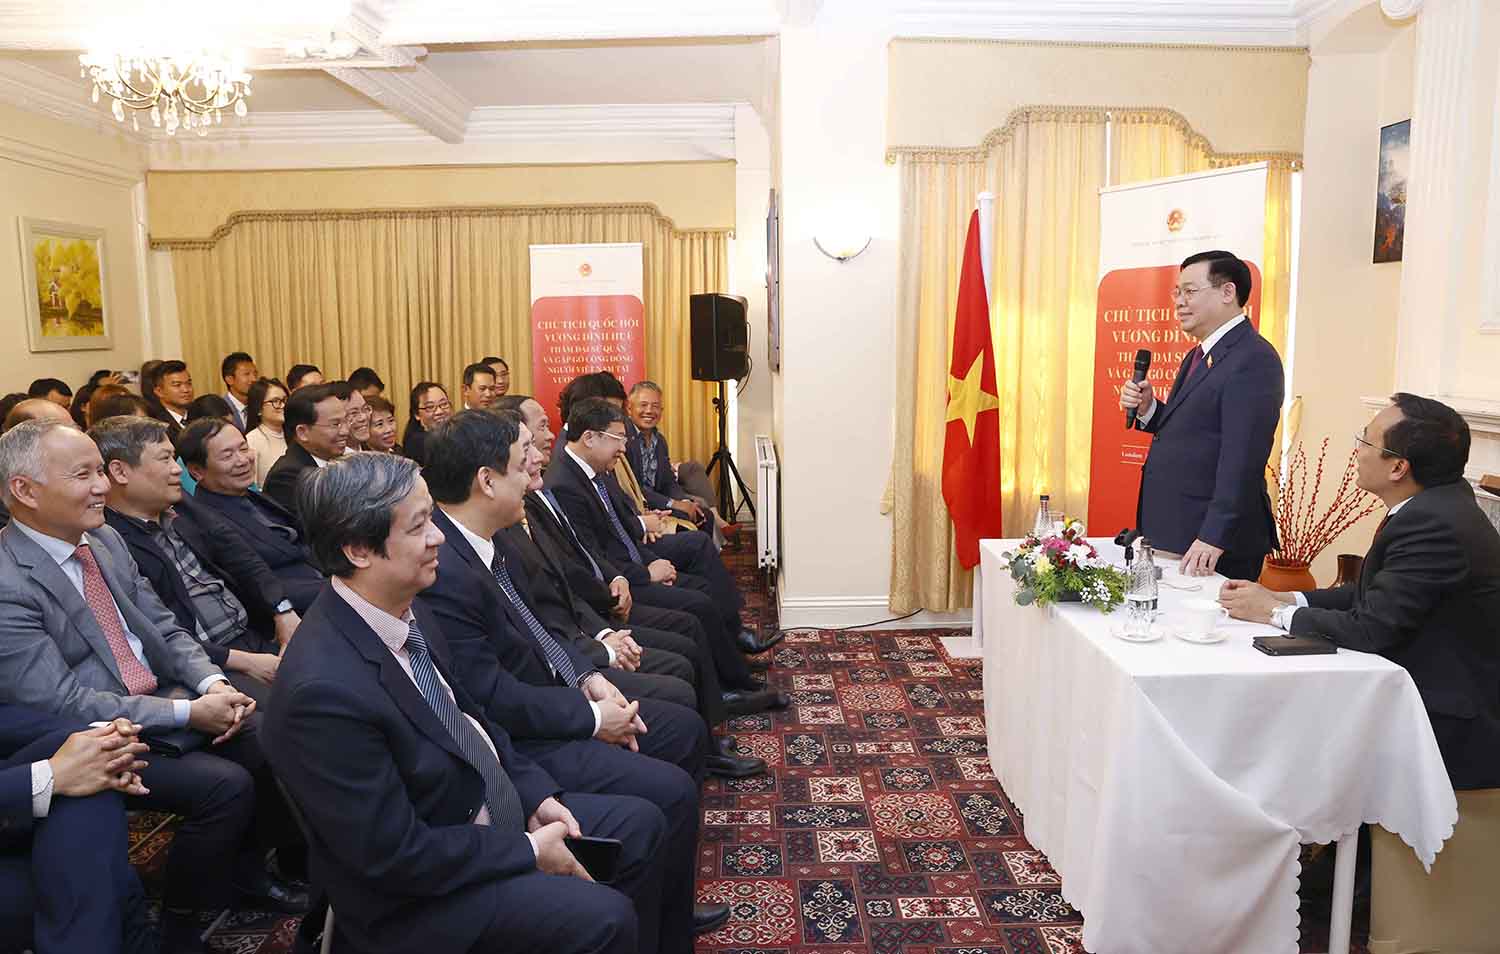 Chủ tịch Quốc hội gặp gỡ cộng đồng người Việt Nam tại Vương quốc Anh nhân chuyến thăm chính thức Liên hiệp Vương quốc Anh và Bắc Ireland vào tháng 6.2022. Ảnh: VPQH